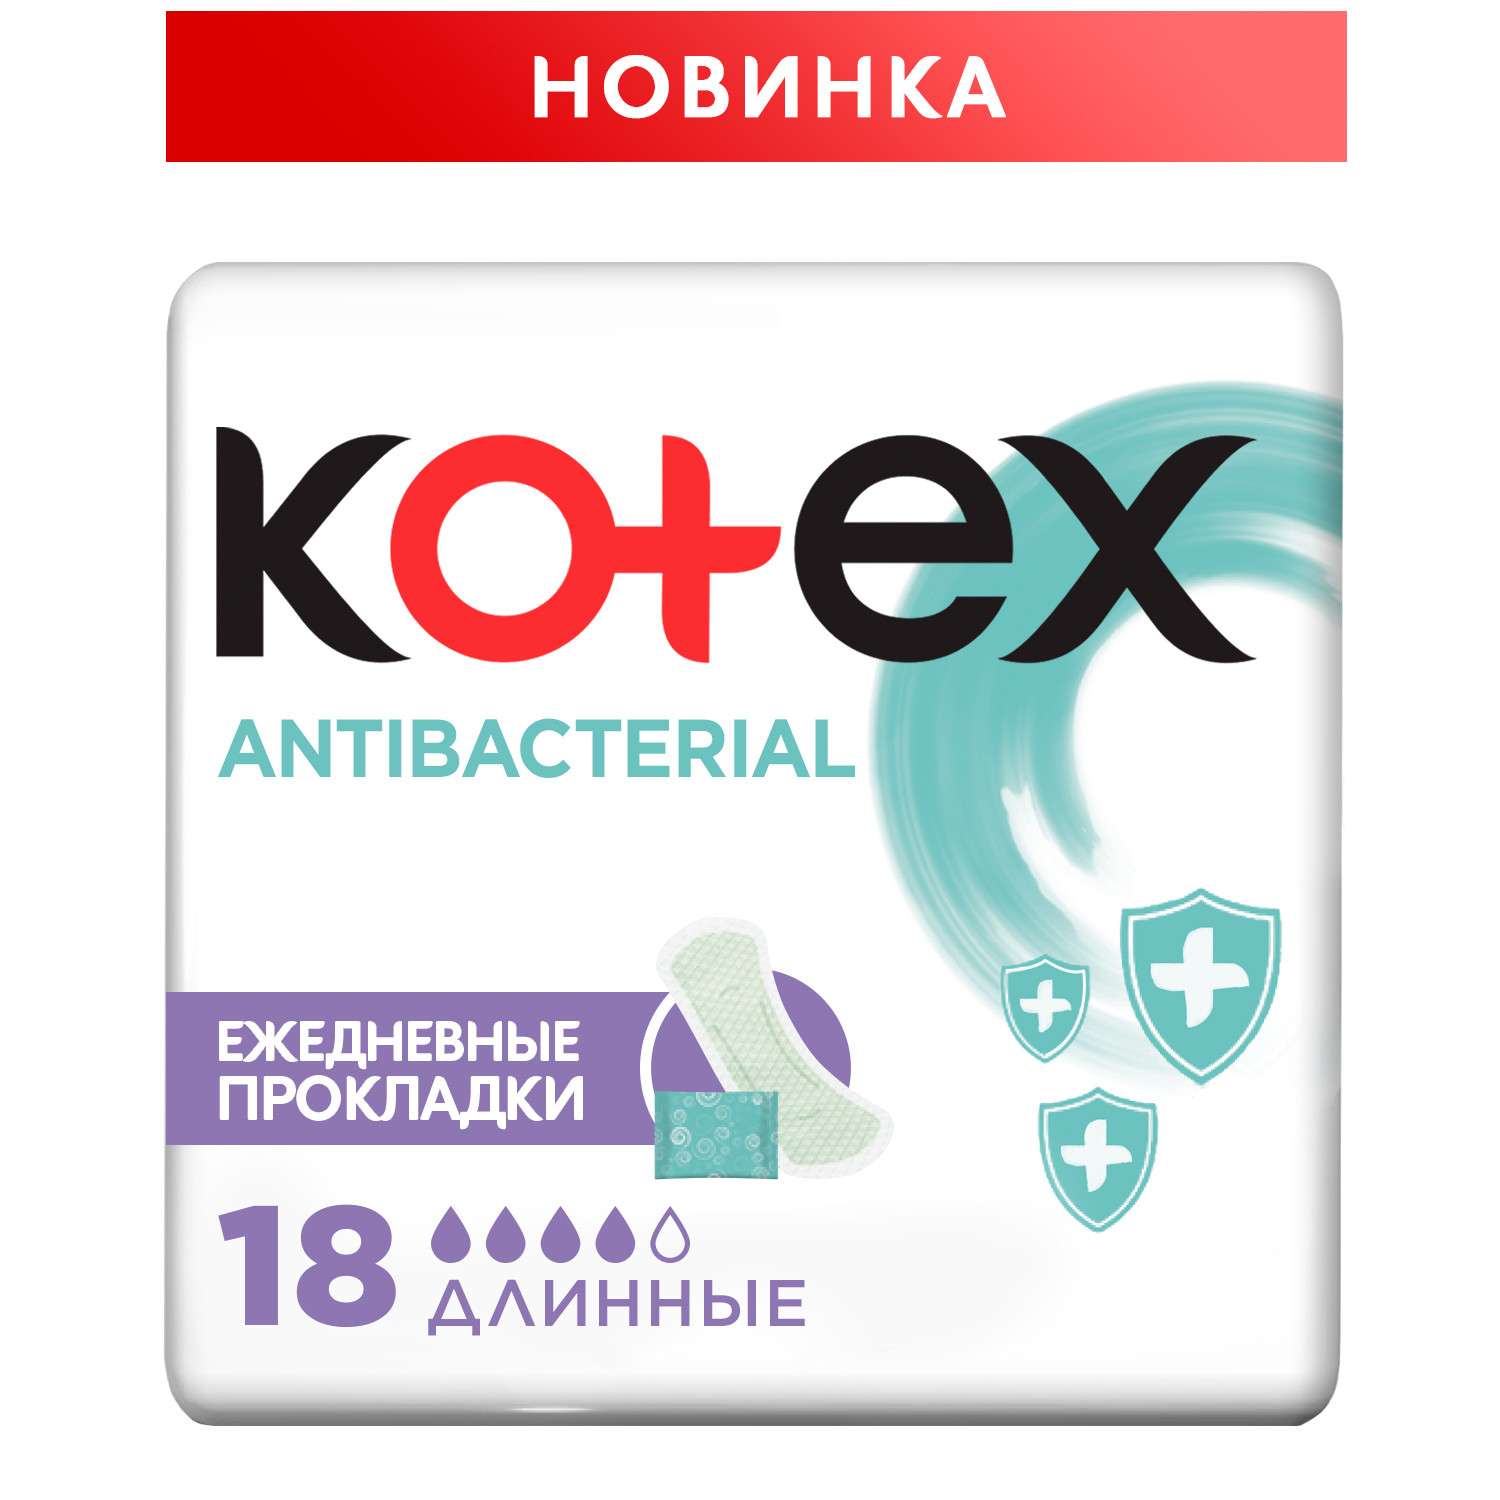 Прокладки ежедневные Kotex Antibacterial длинные 18шт - фото 2